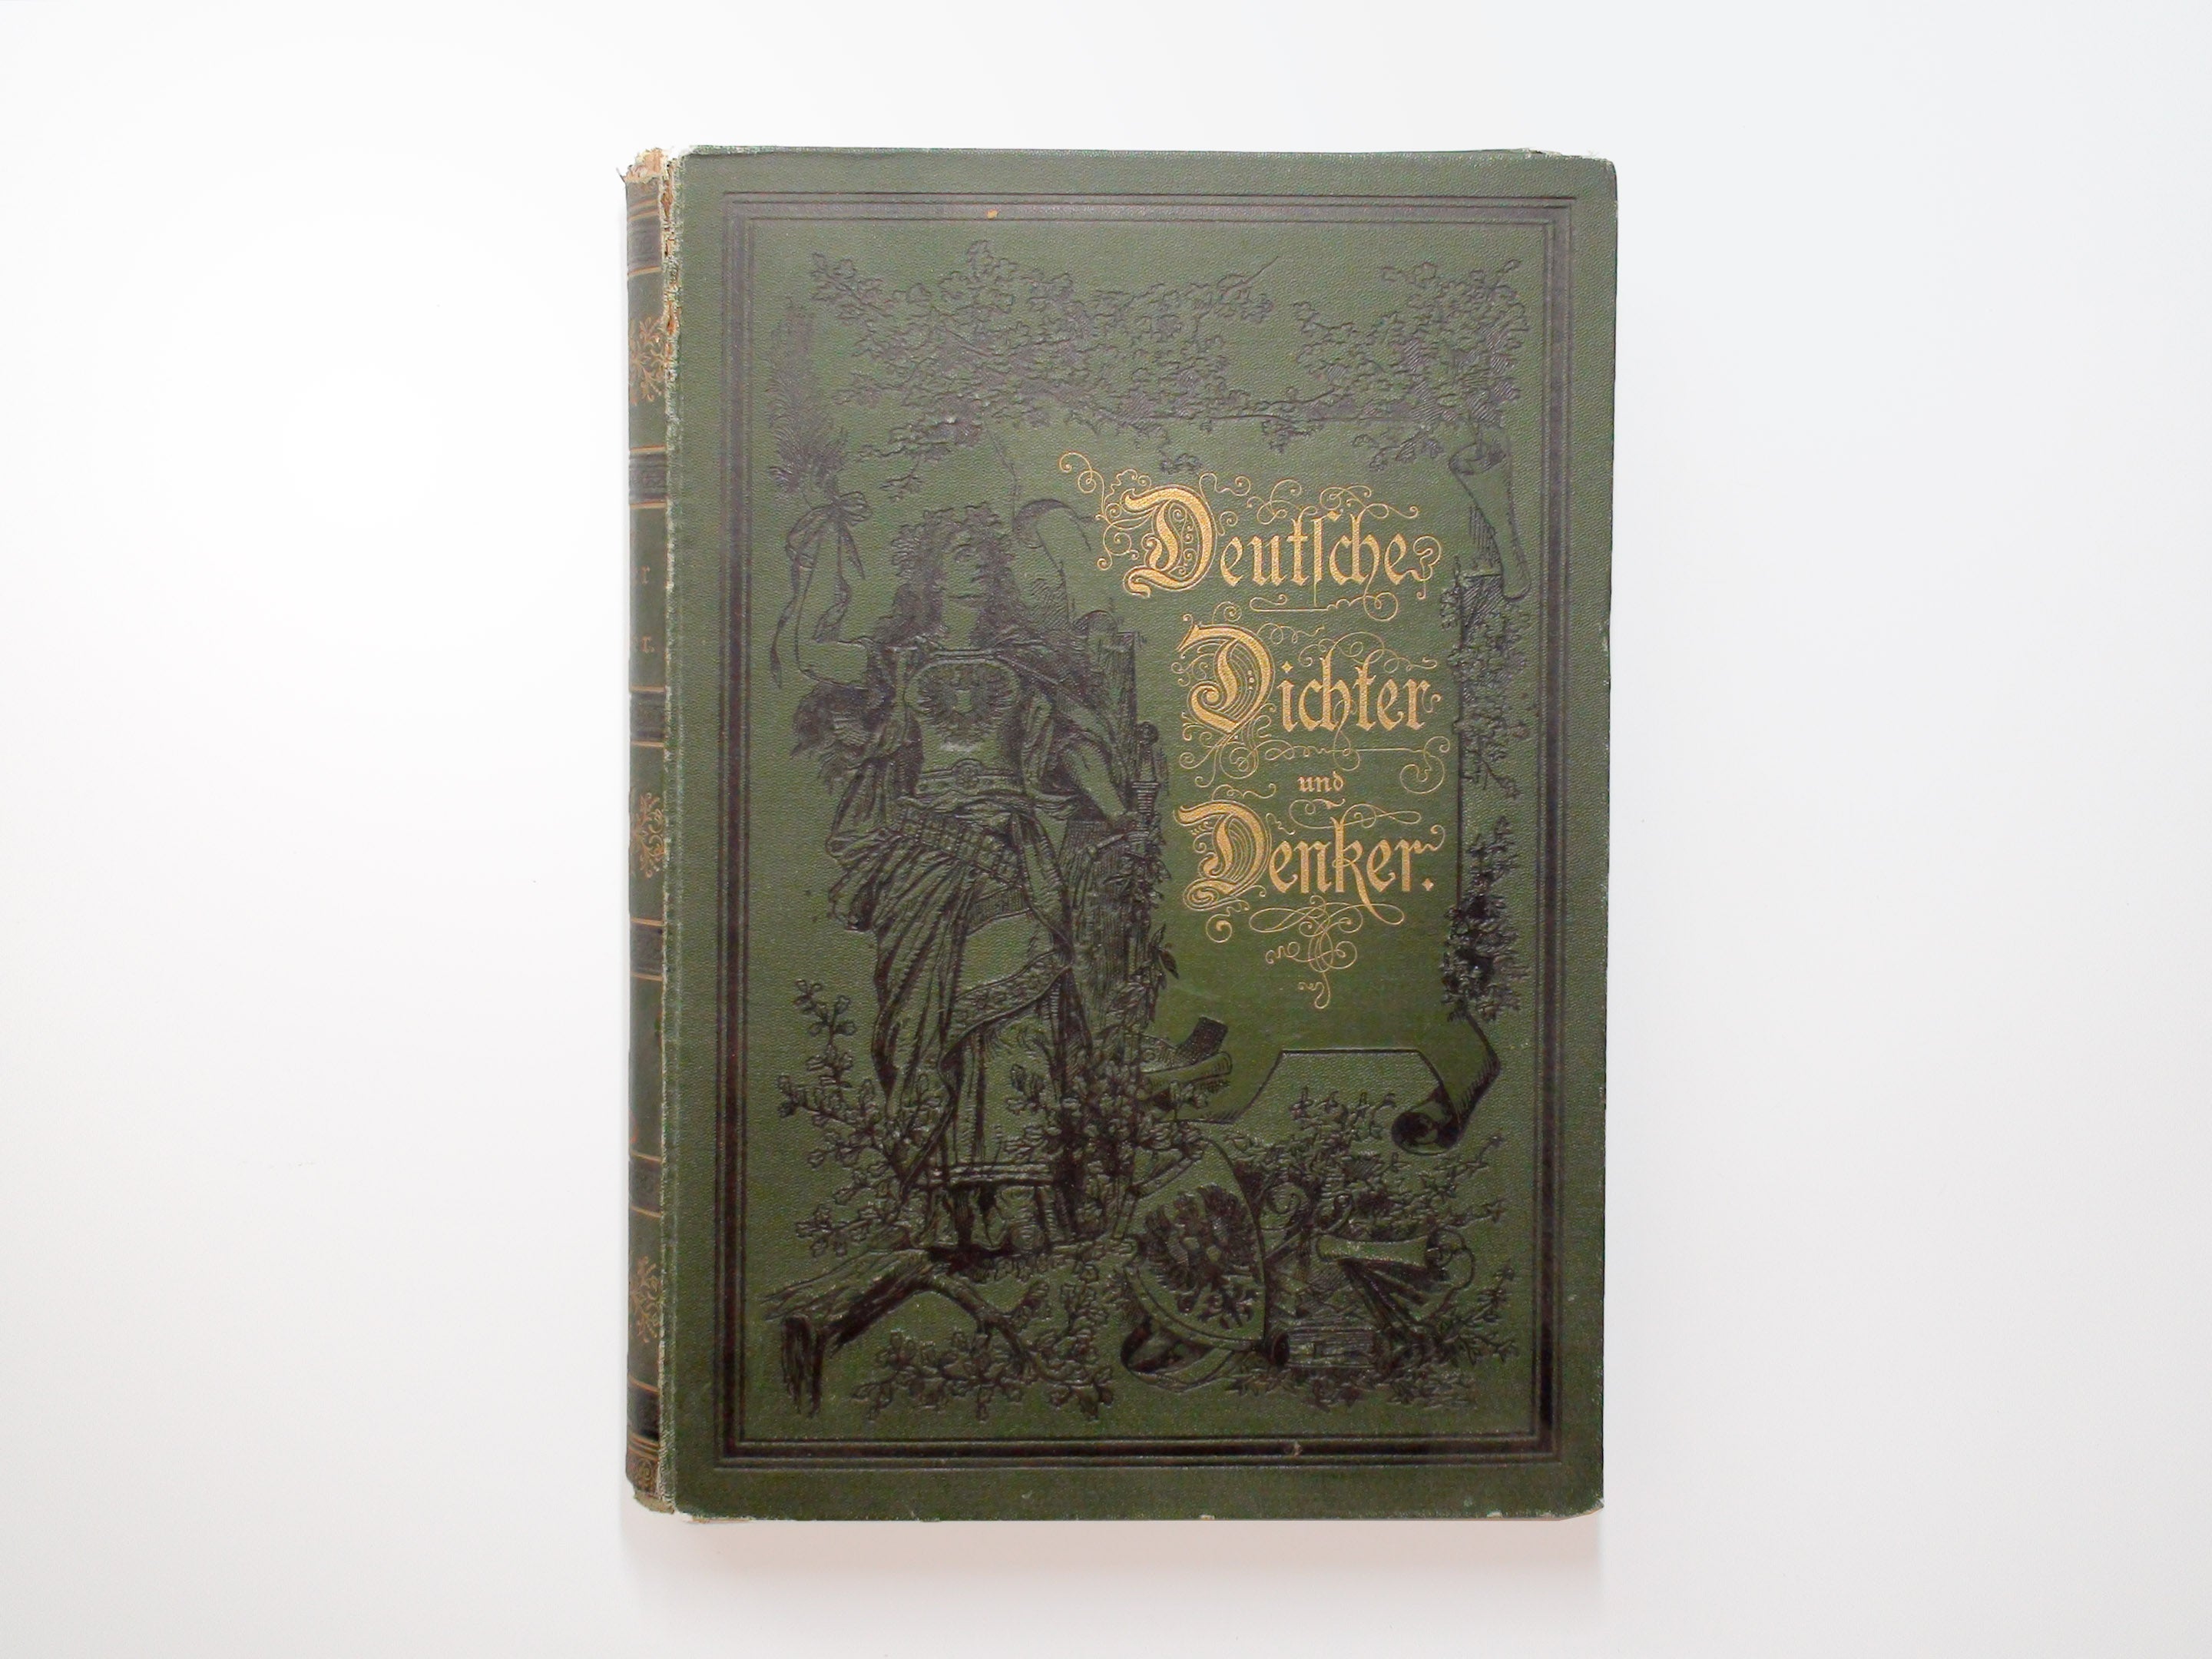 Gefchichte Der Deutschen Literatur, Friedrich Sehrwald, German, Vol I, 1884